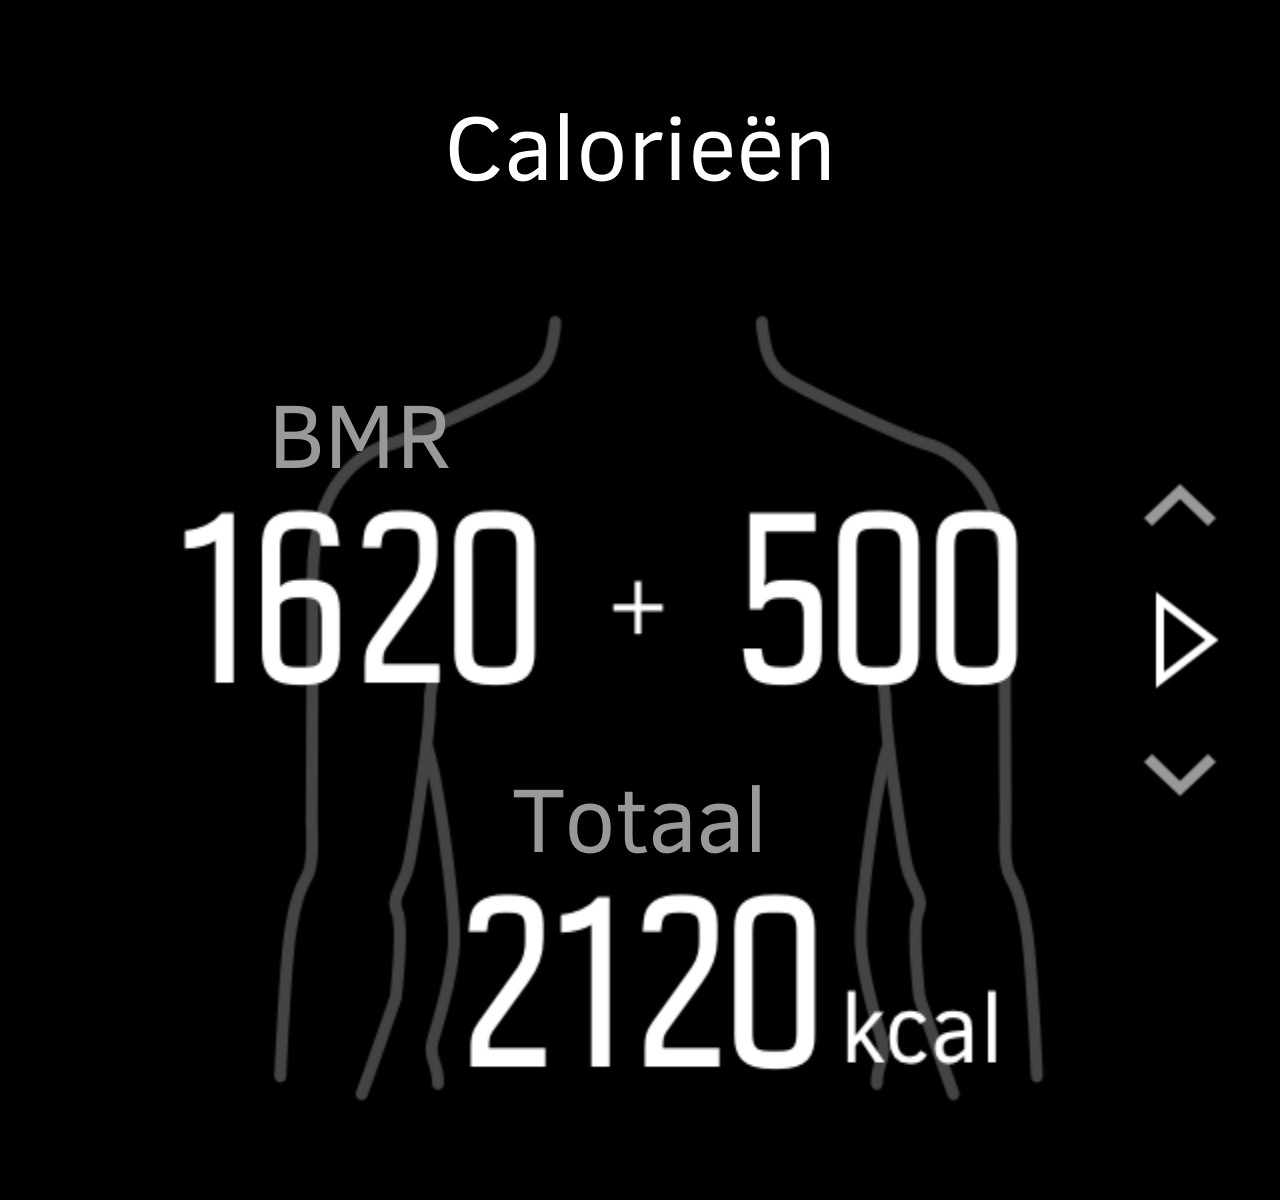 Bij het instellen van uw stappendoel bepaalt u het totale aantal stappen voor de dag. Het calorieëndoel is een totaal voor de dag, maar is gebaseerd op twee verschillende metingen.